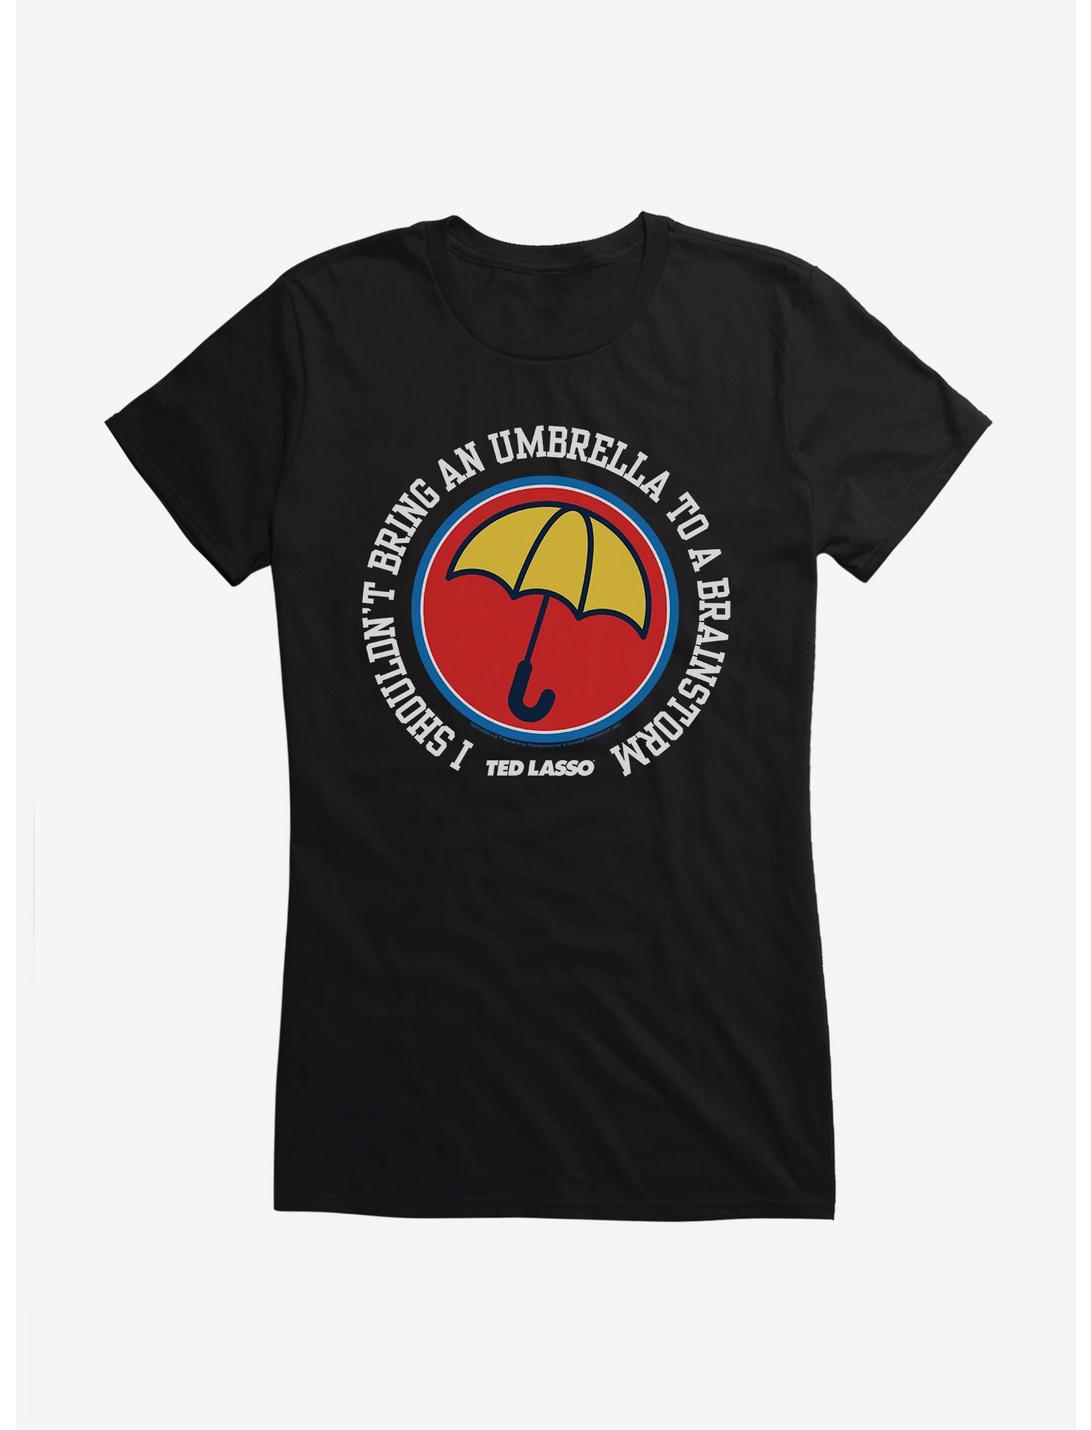 Ted Lasso Umbrella Brainstorm Girls T-Shirt, , hi-res